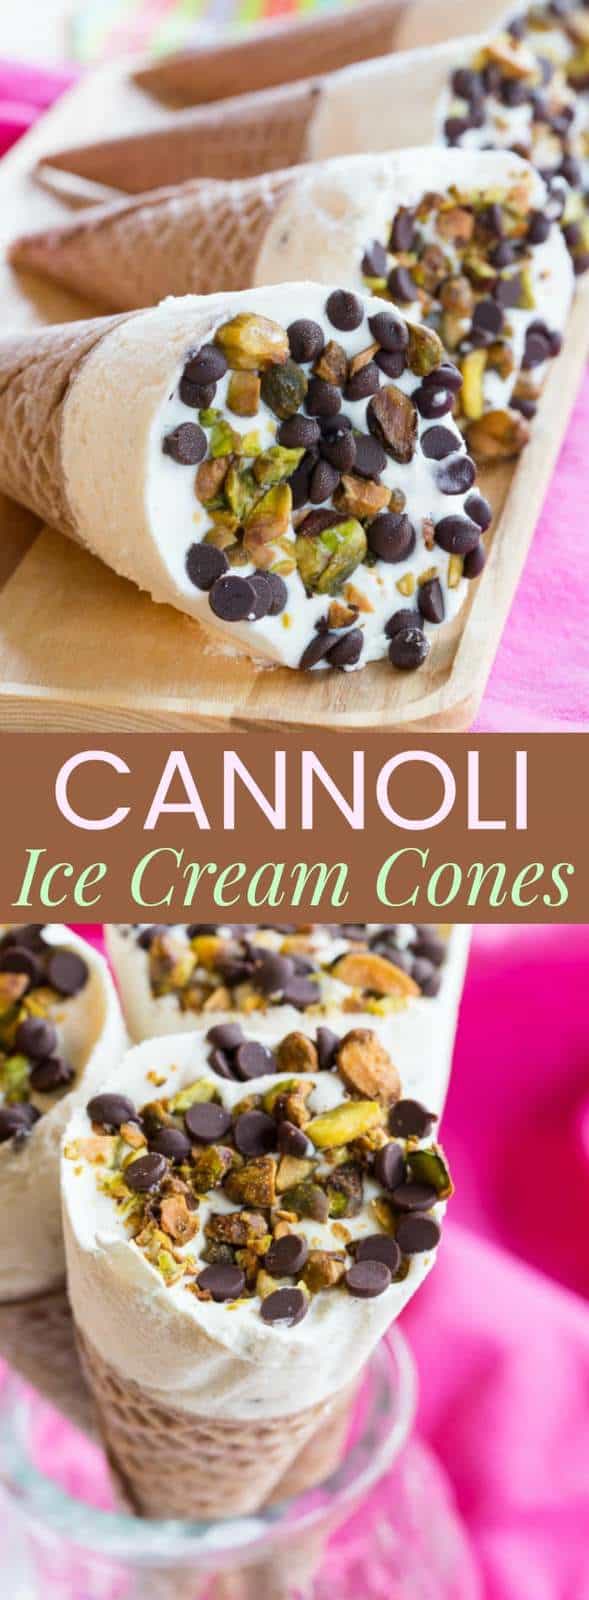 Cannoli Ice Cream Cones - Cupcakes & Kale Chips